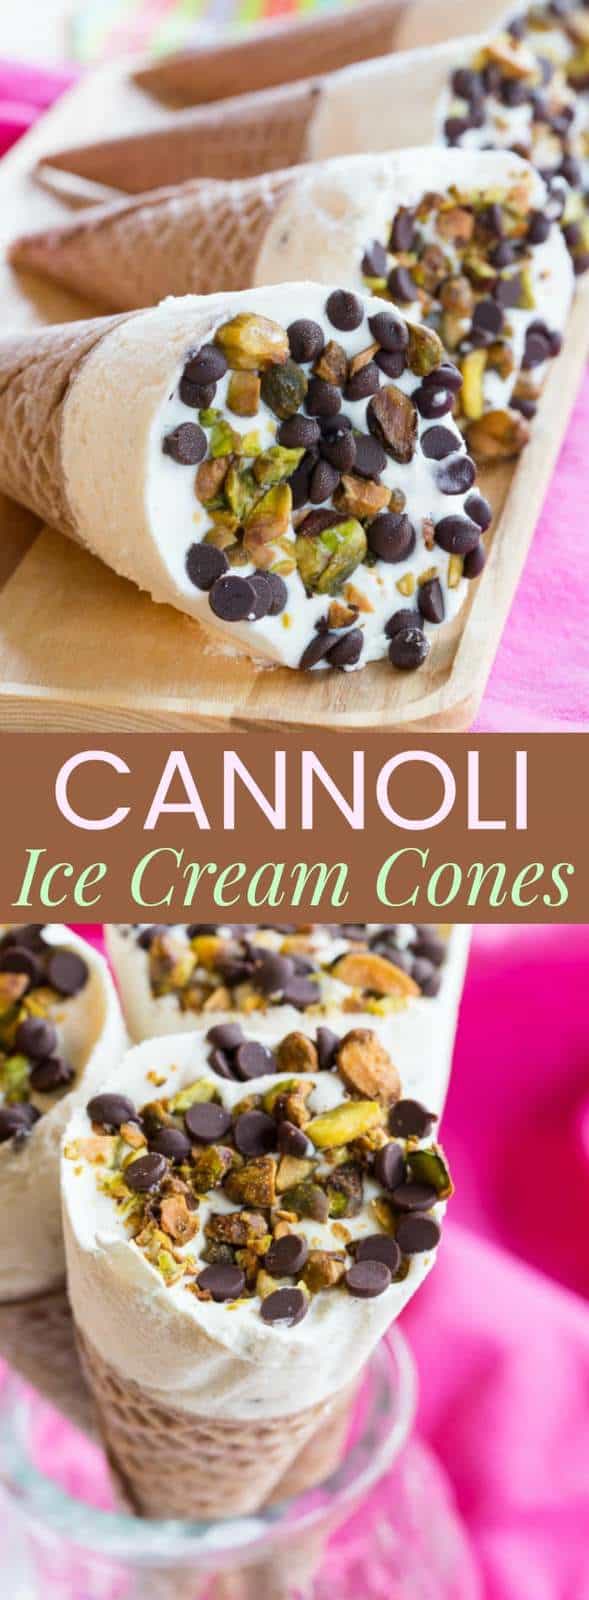 Cannoli Ice Cream Cones - Cupcakes & Kale Chips